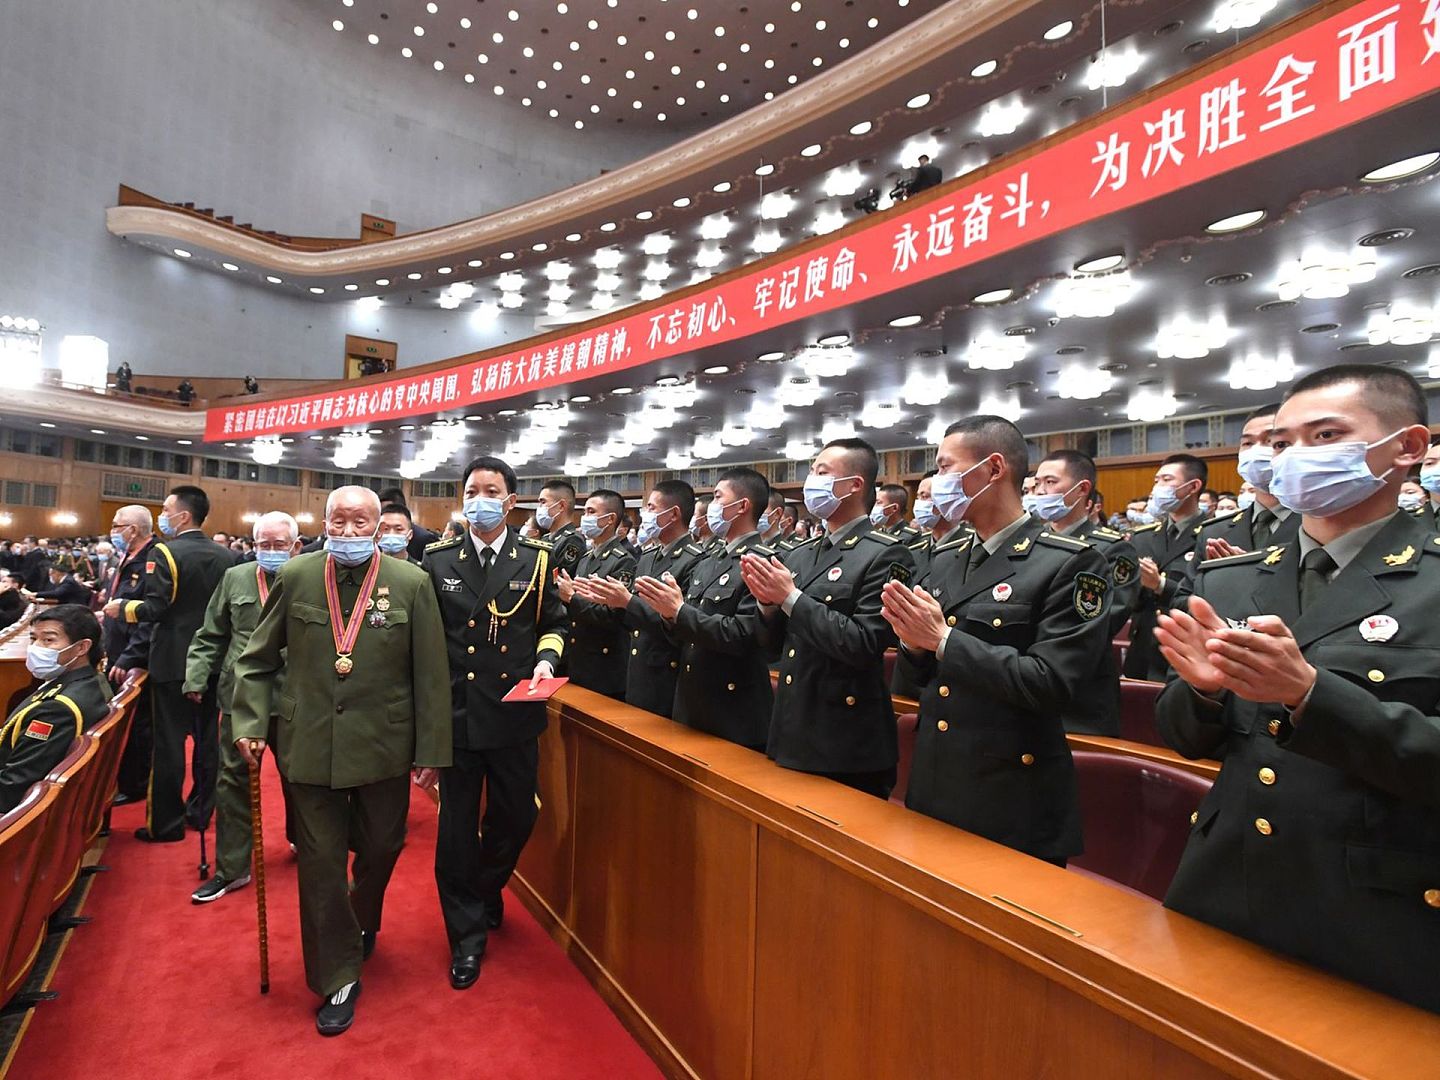 2020年10月23日，中国举办“纪念中国人民志愿军抗美援朝出国作战70周年大会”，习近平出席并发表重要讲话。此为大会开始前志愿军老兵入场的画面。（新华社）